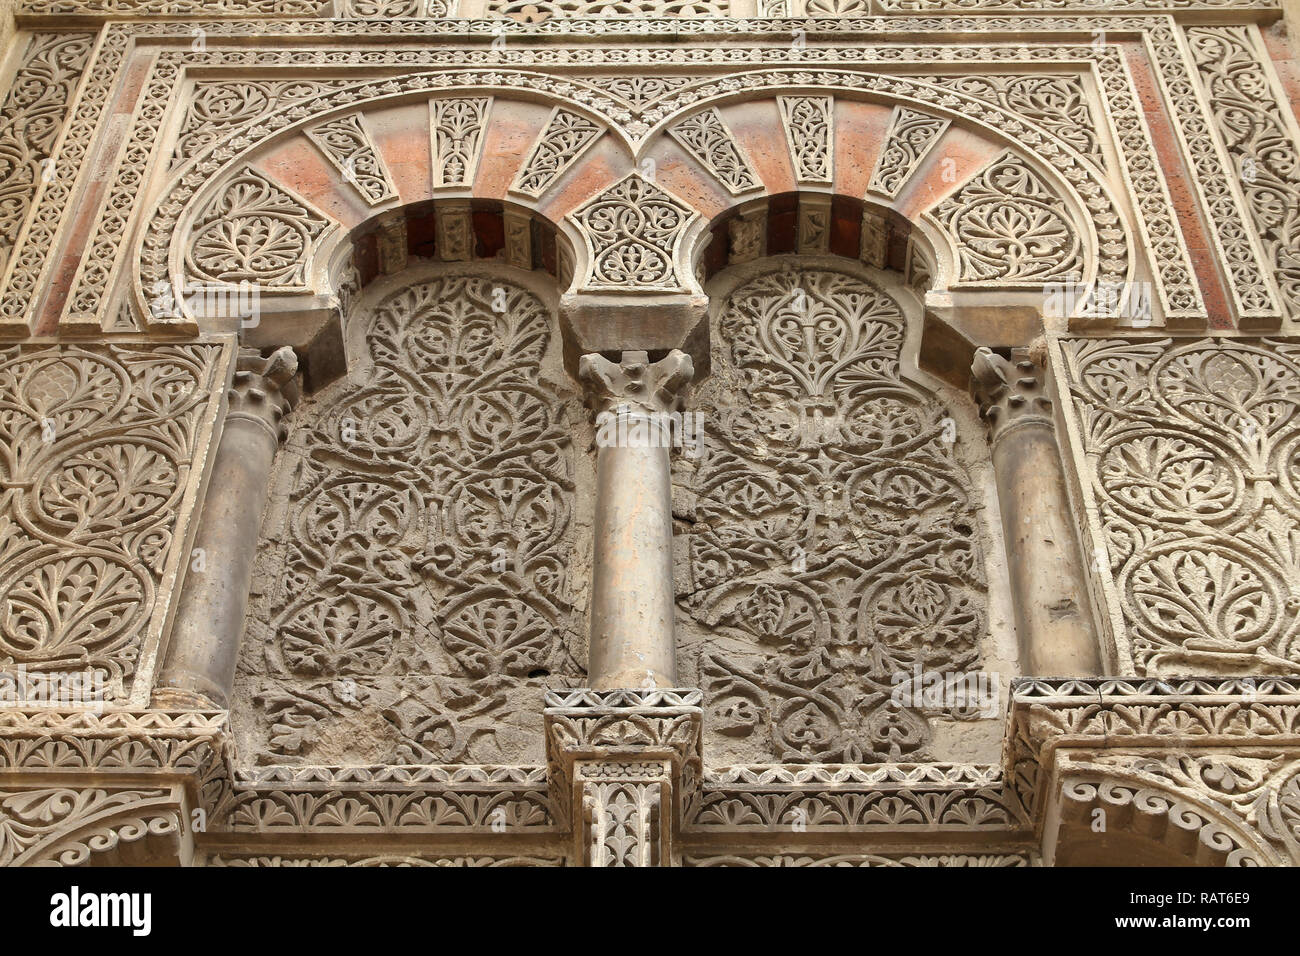 Cordoba, Spanien. Die Große Moschee (derzeit Katholische Kathedrale). UNESCO-Weltkulturerbe. Mashrabiya Fenster mit Stein Gitterwerk. Schöne Art. Stockfoto